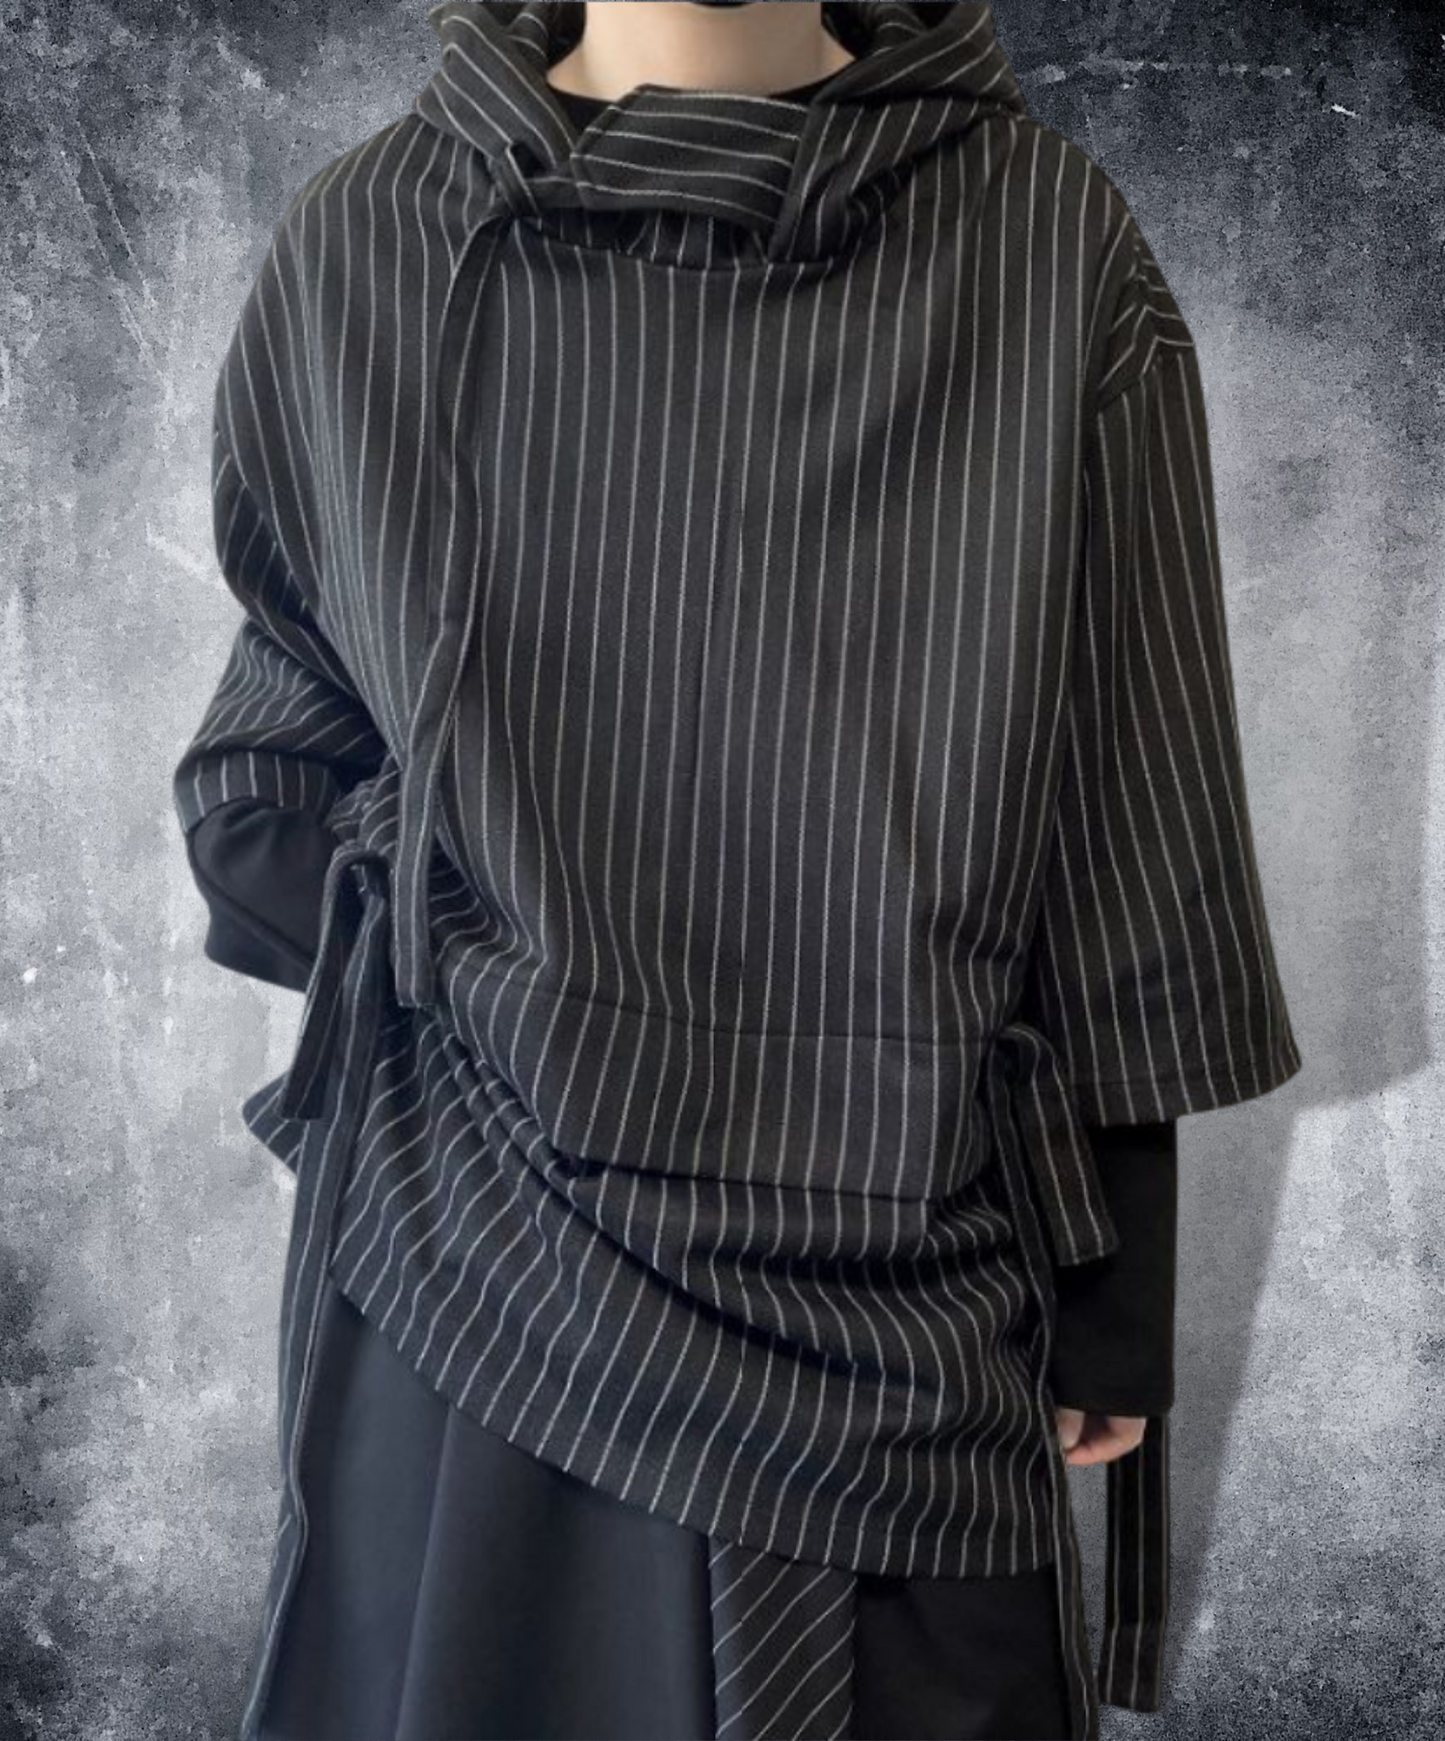 【style11】dark mode outfit set EN892（hoodie + pants set）